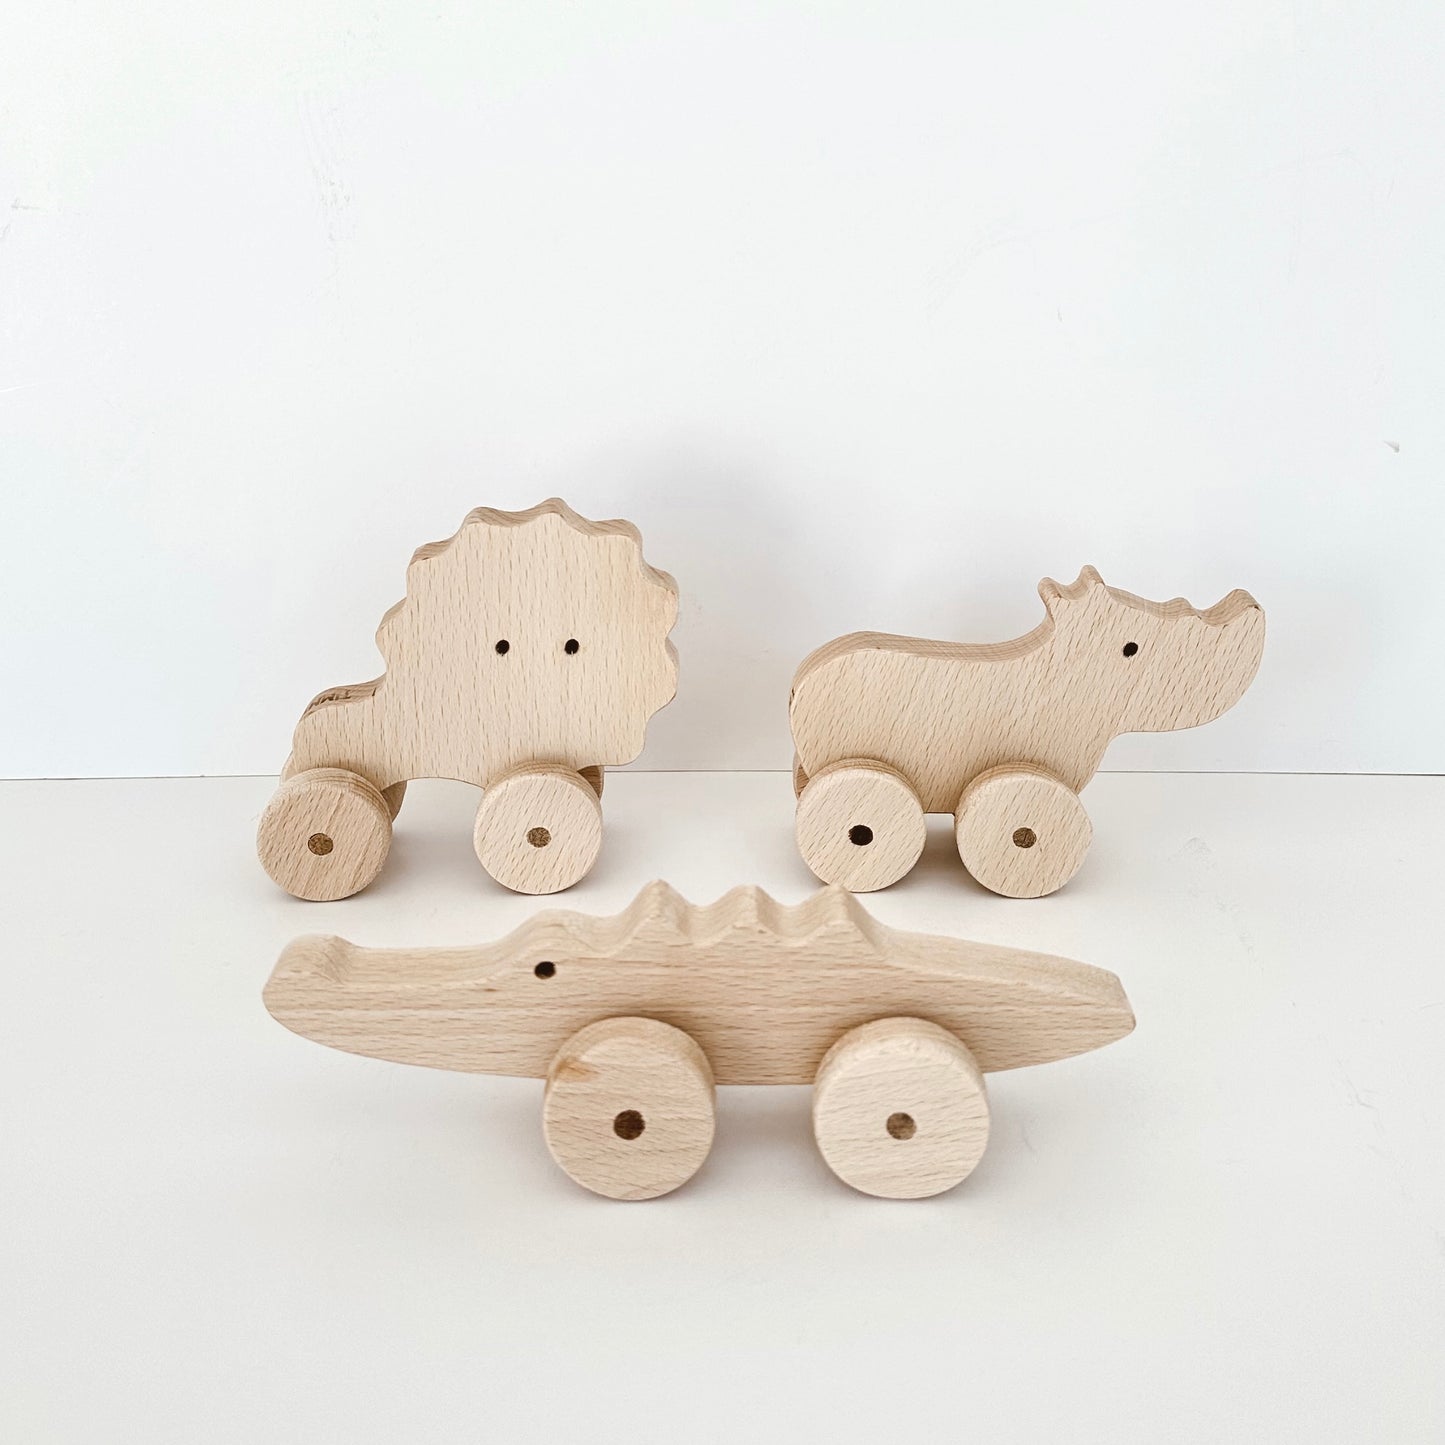 Wood Toy Set - Wild Animals